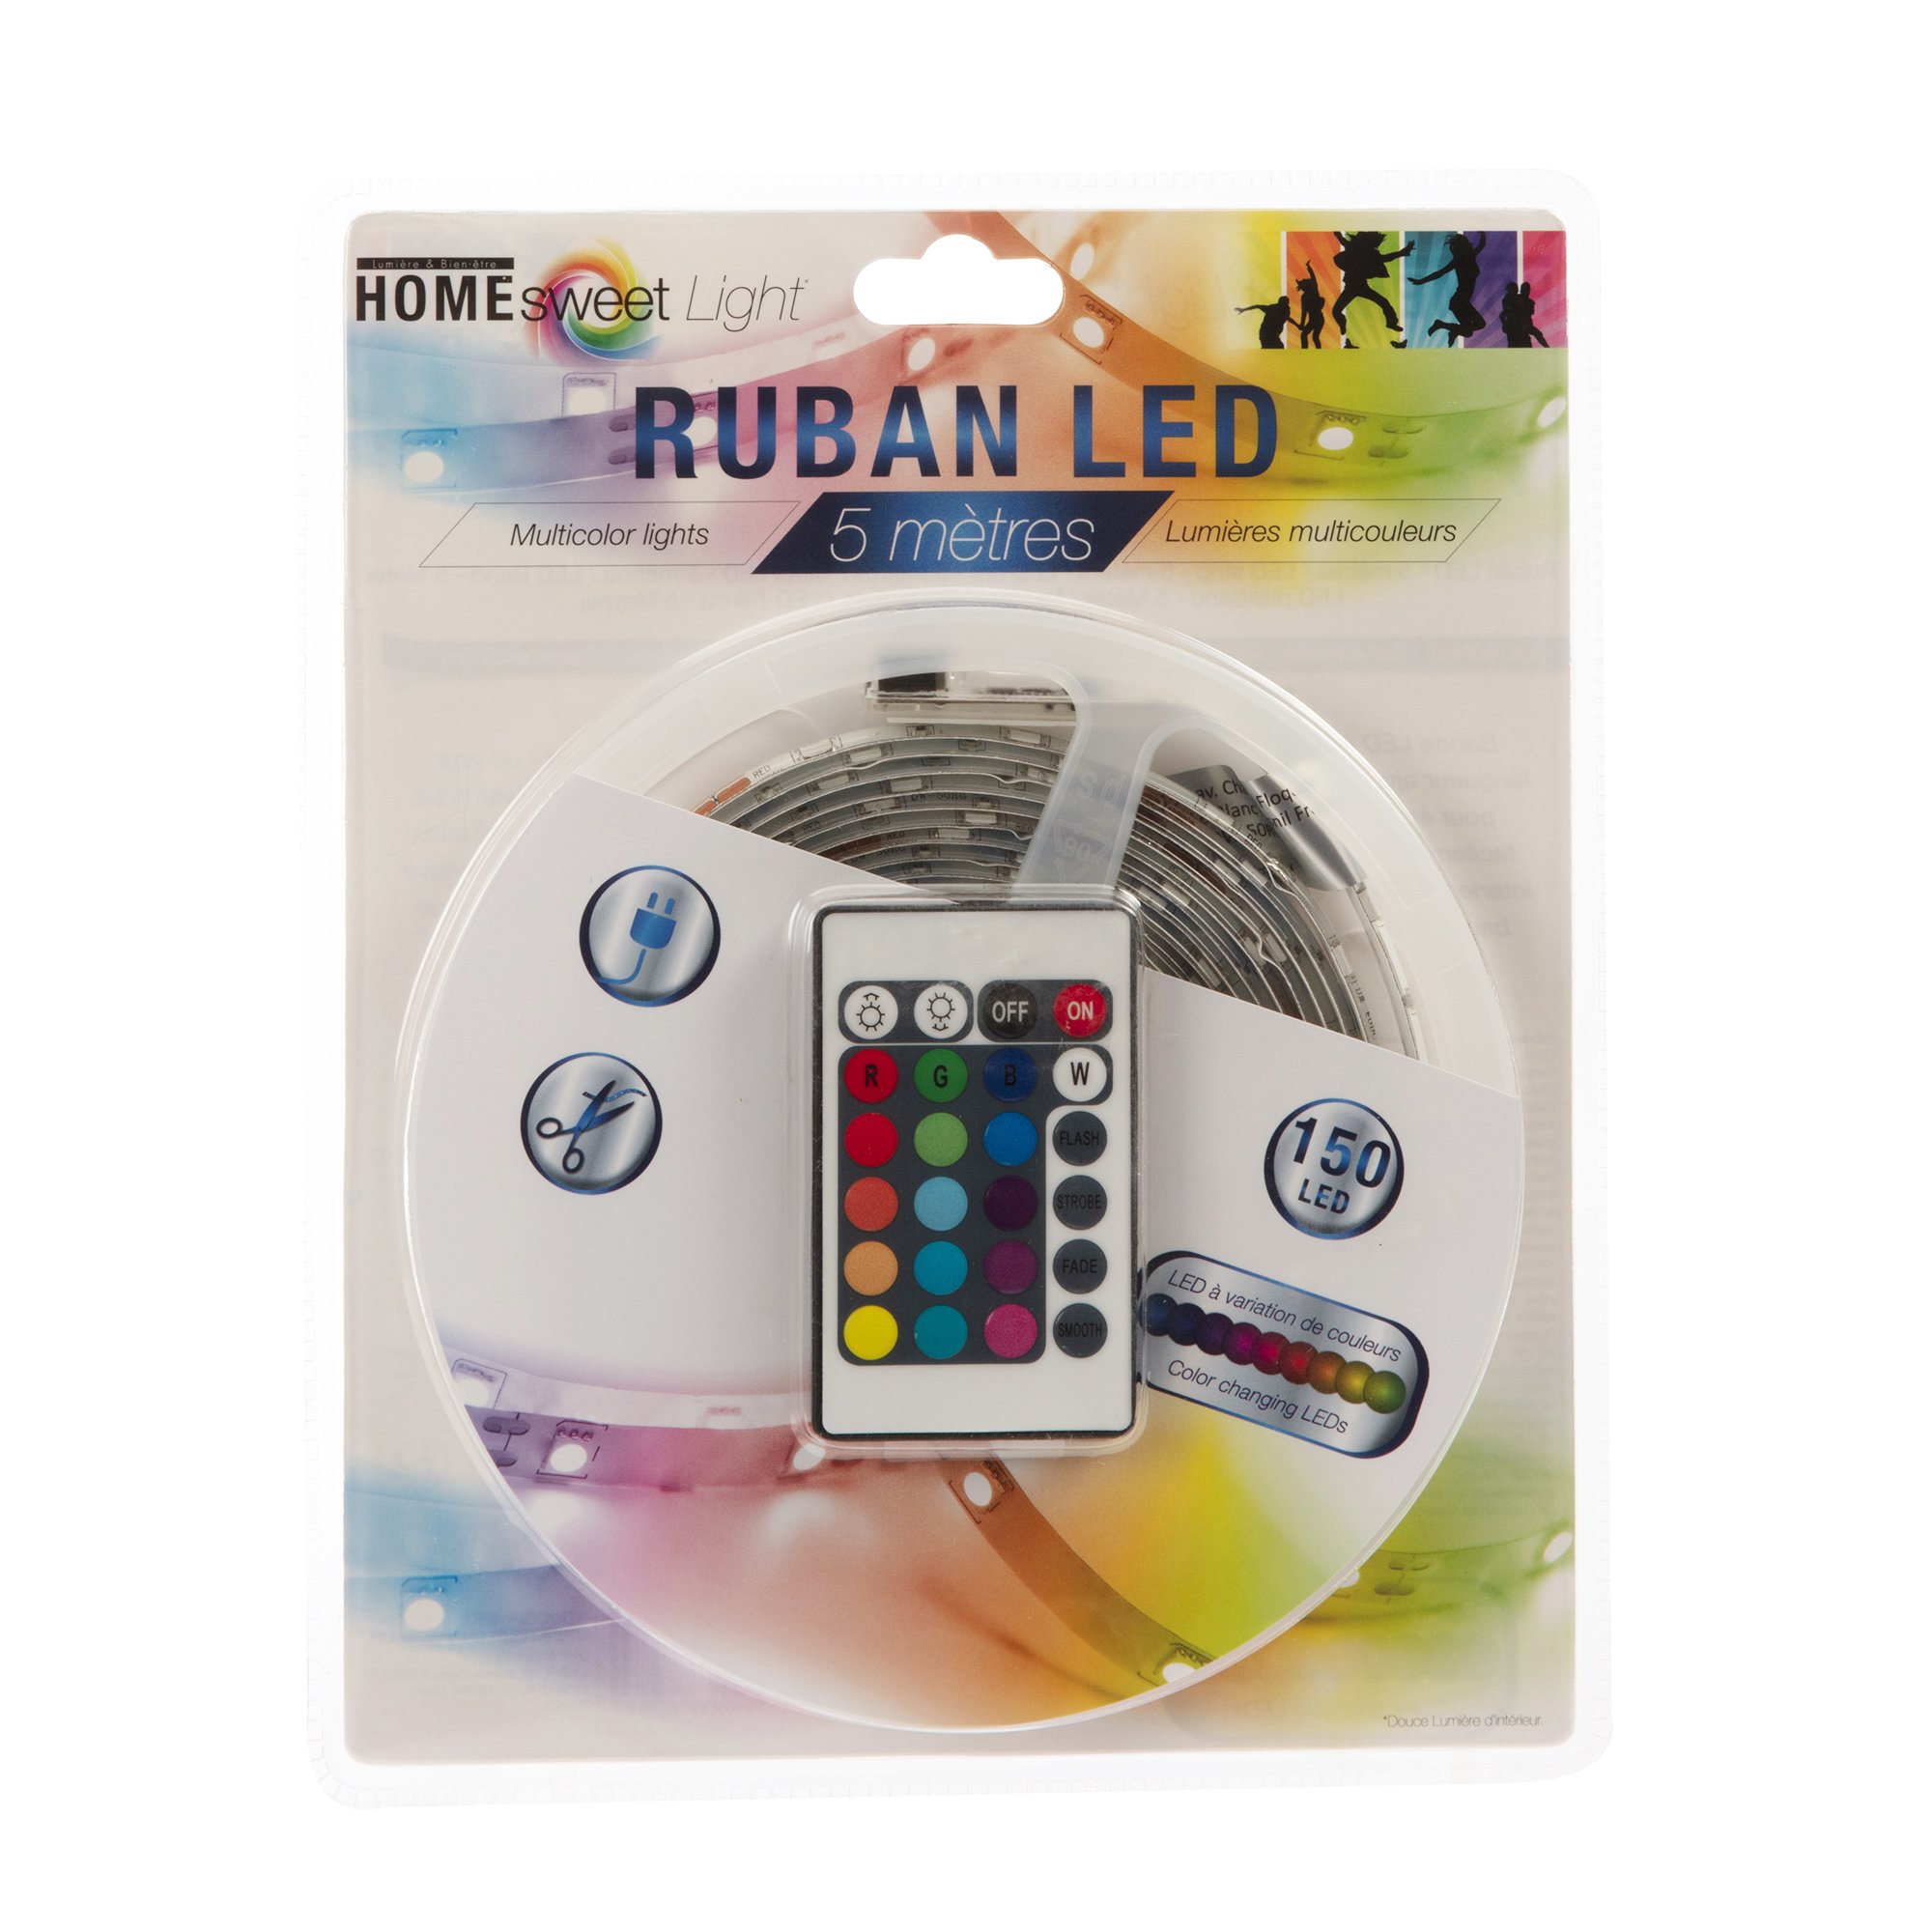 Ruban LED 5M Multicolore + télécommande - Luminaire/Lampe